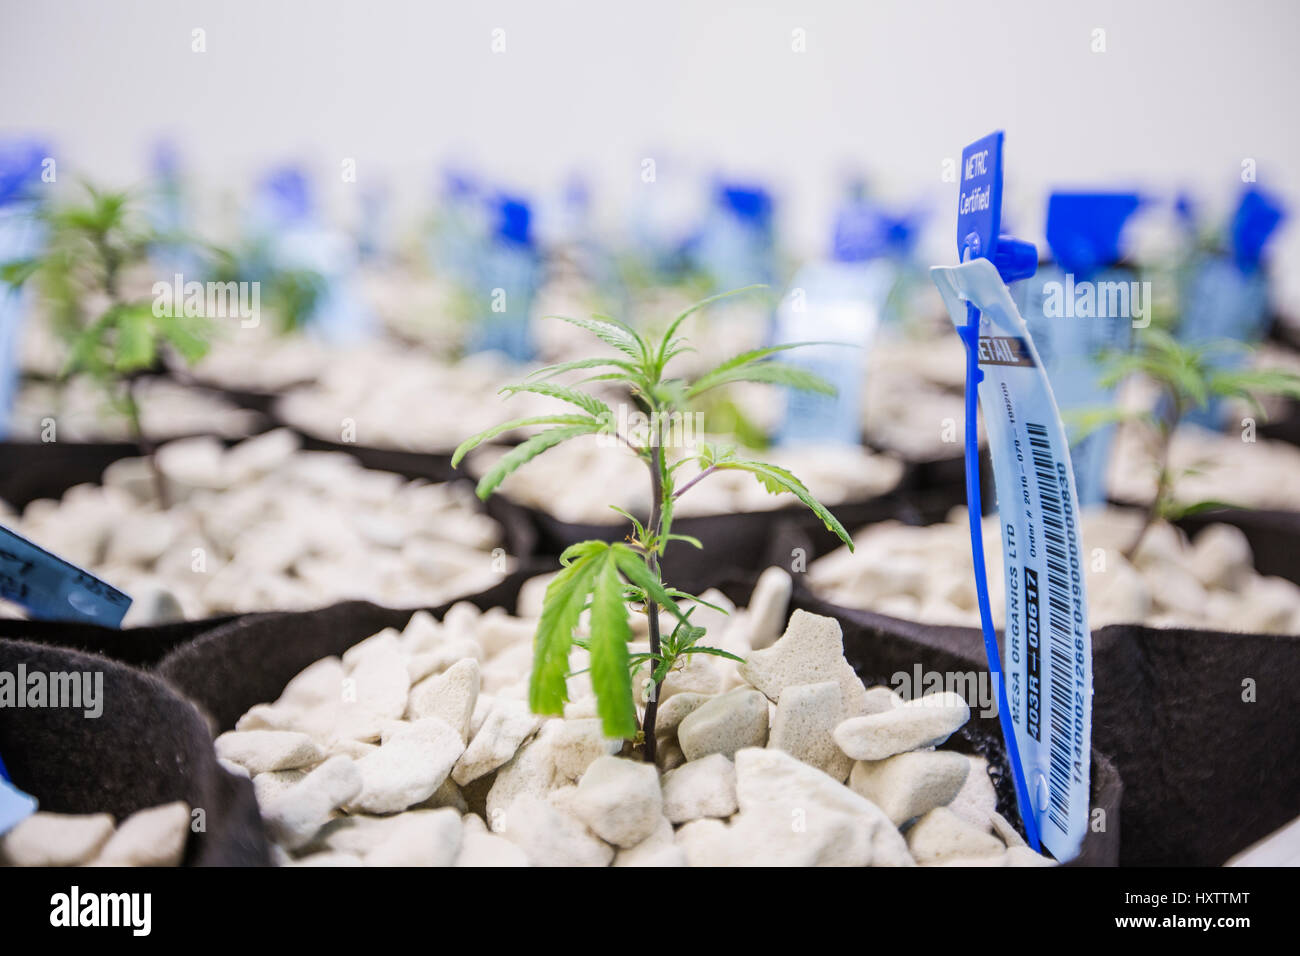 Un portrait de jeunes plants de cannabis poussant dans une culture hydroponique. Banque D'Images